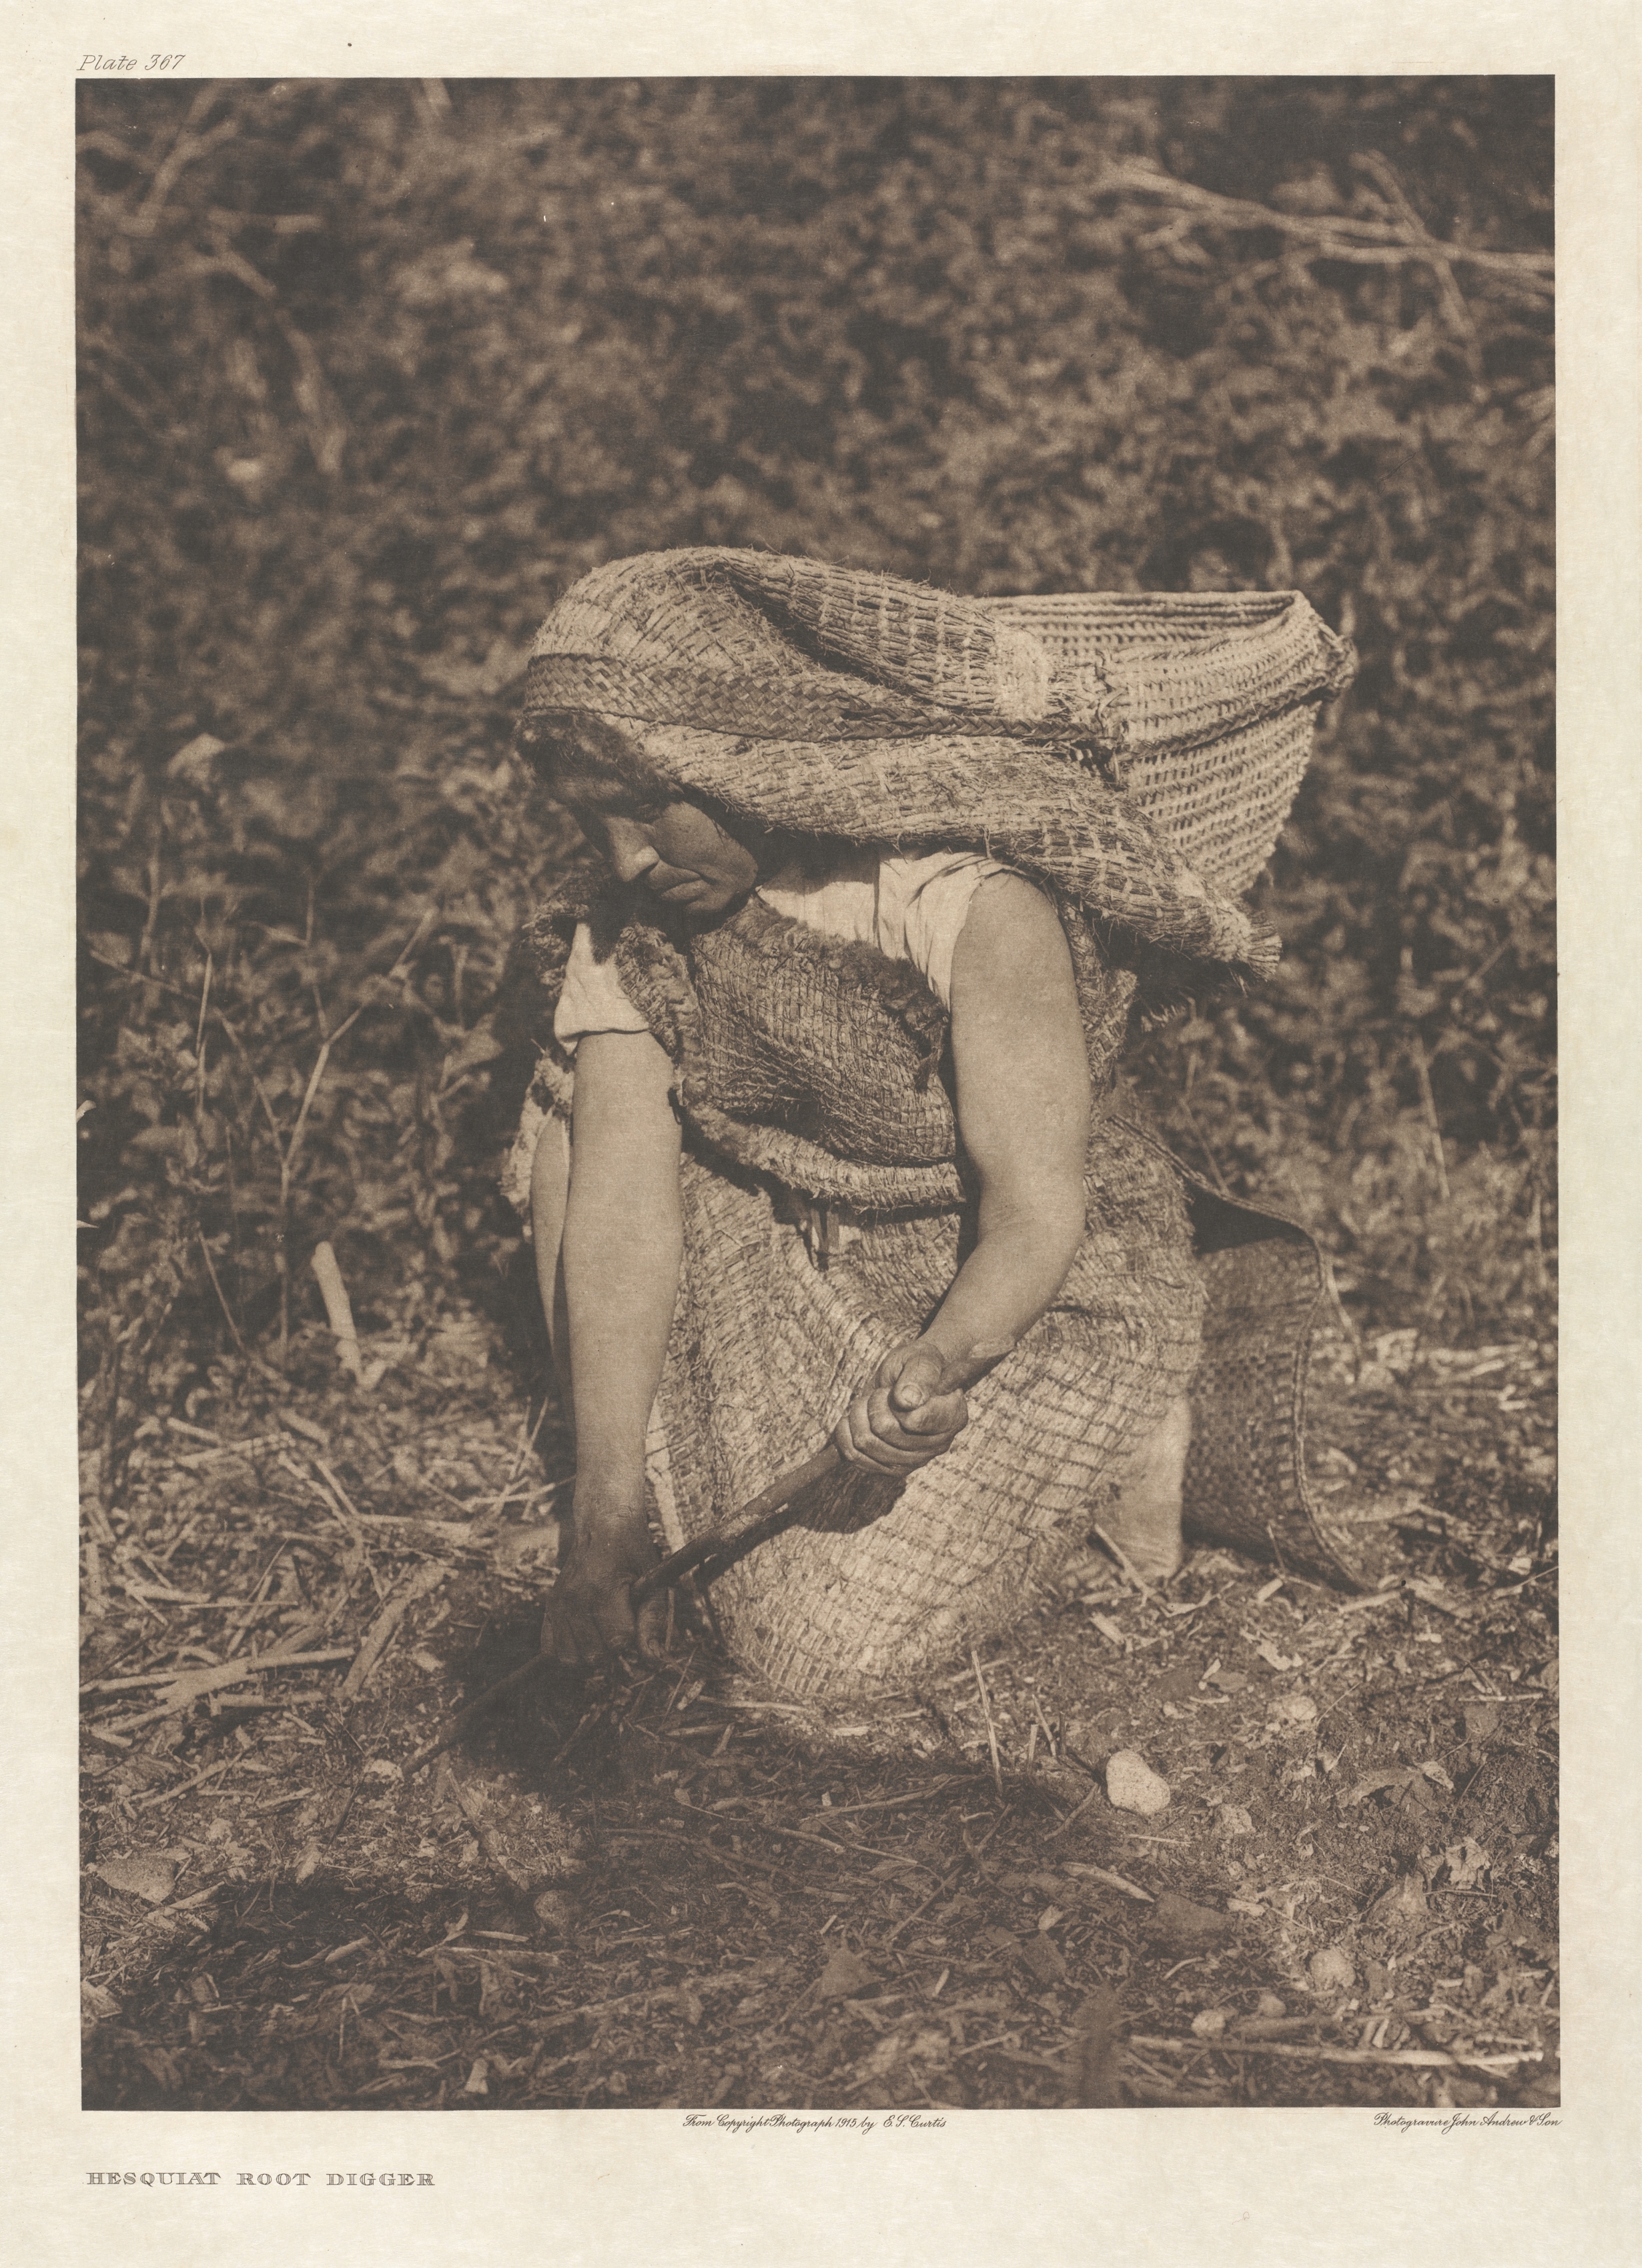 Portfolio XI, Plate 367: Hesquiat Root Digger